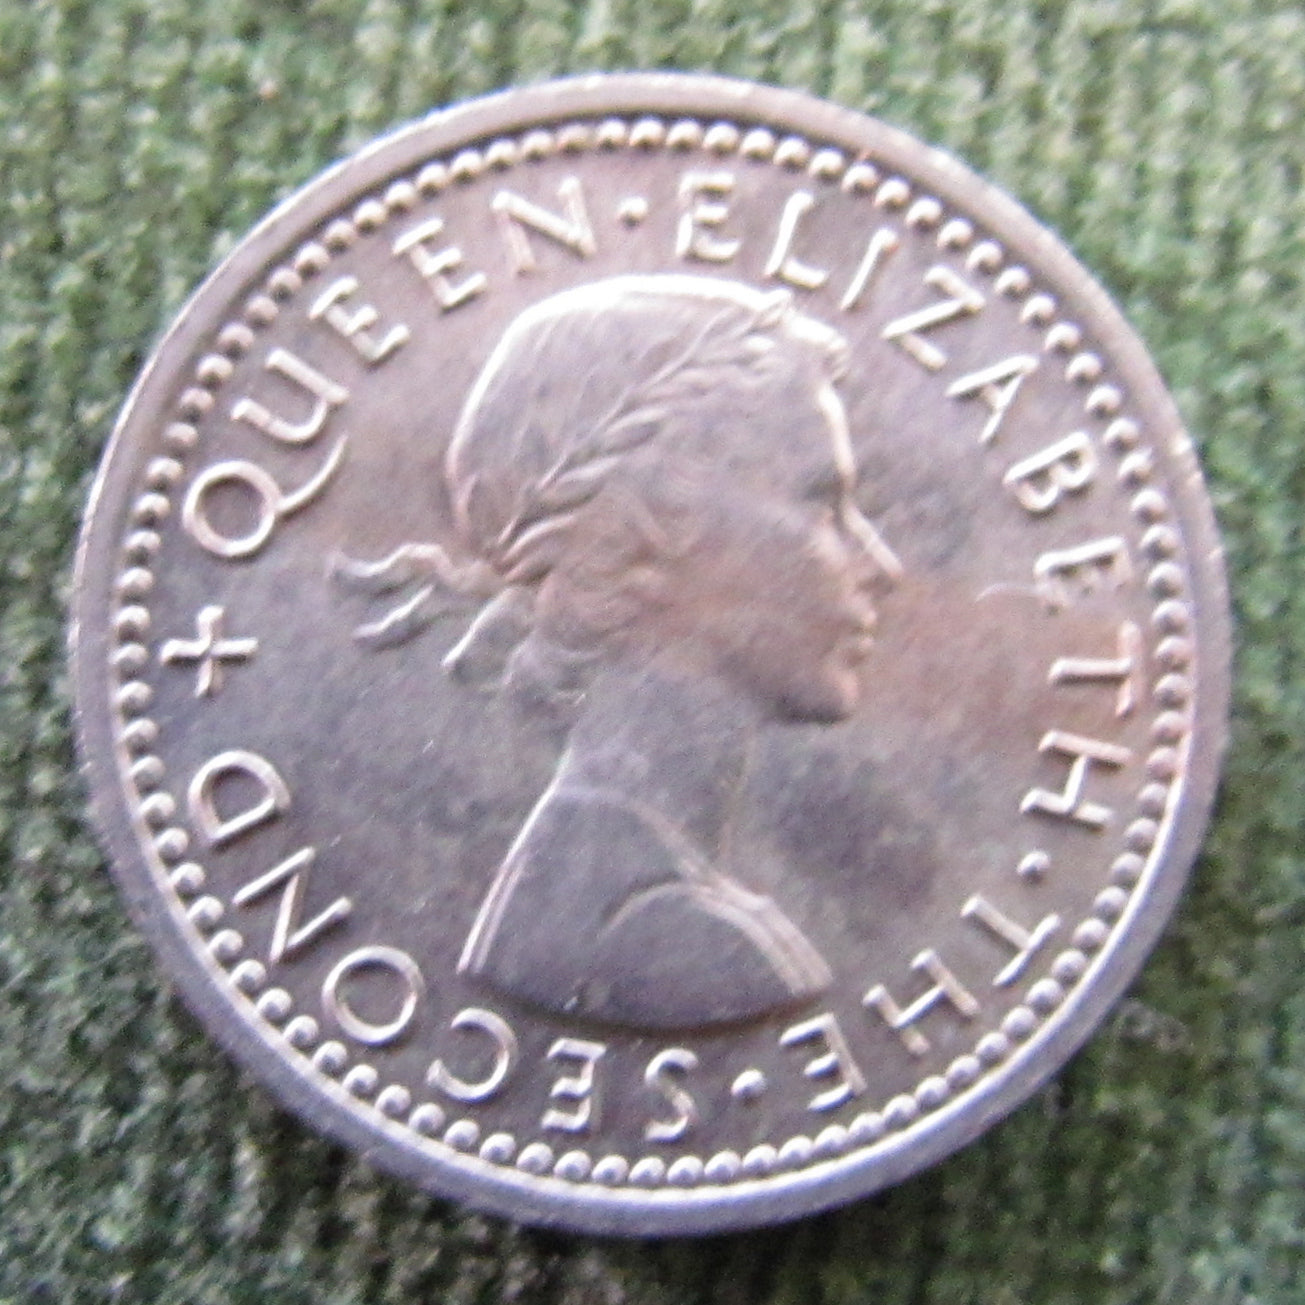 New Zealand 1965 Threepence Queen Elizabeth II Coin